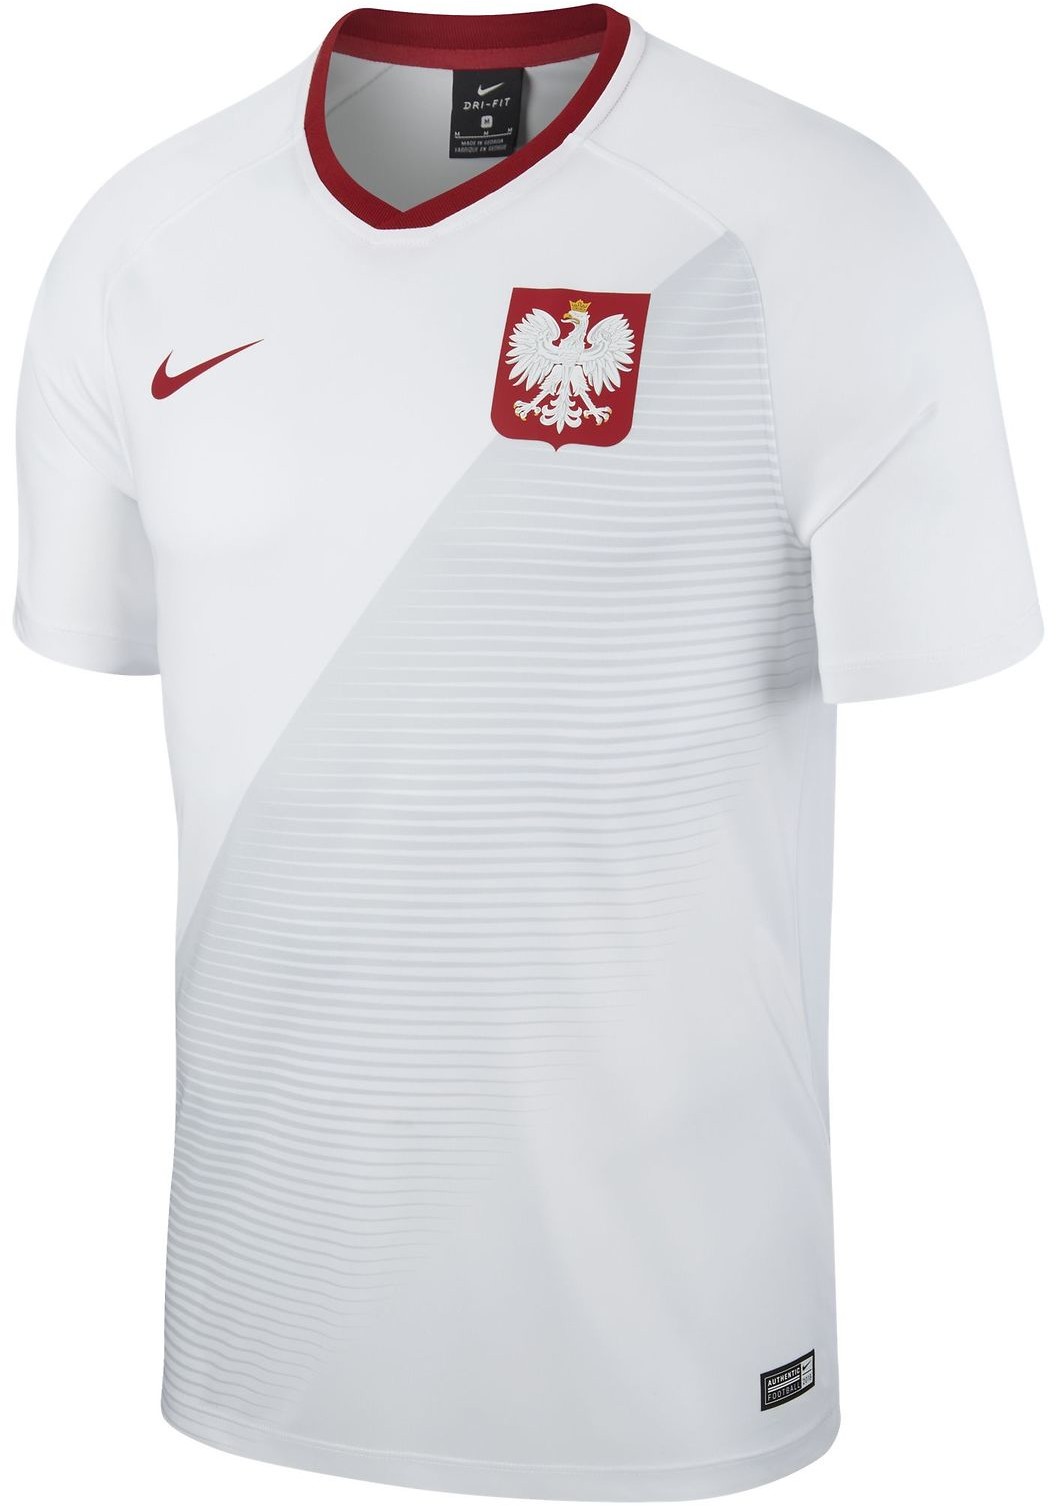 Sprzęt do piłki nożnej, Koszulki piłkarskie Ceny, Opinie, Sklepy -  SKAPIEC.pl